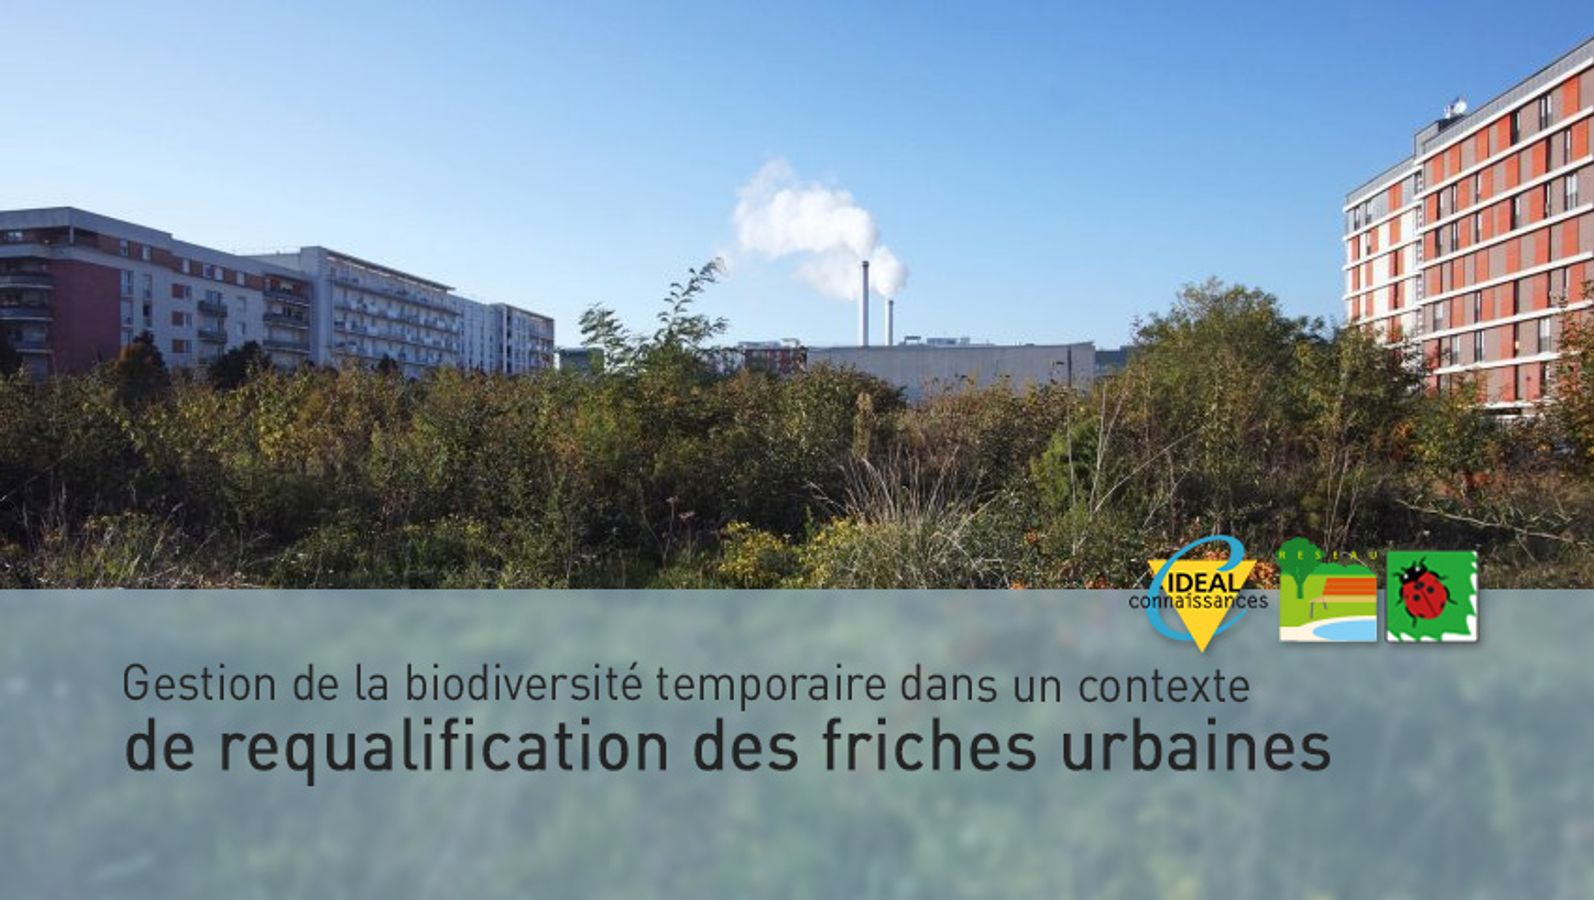 Gestion de la biodiversité temporaire dans un contexte de requalification des friches urbaines.